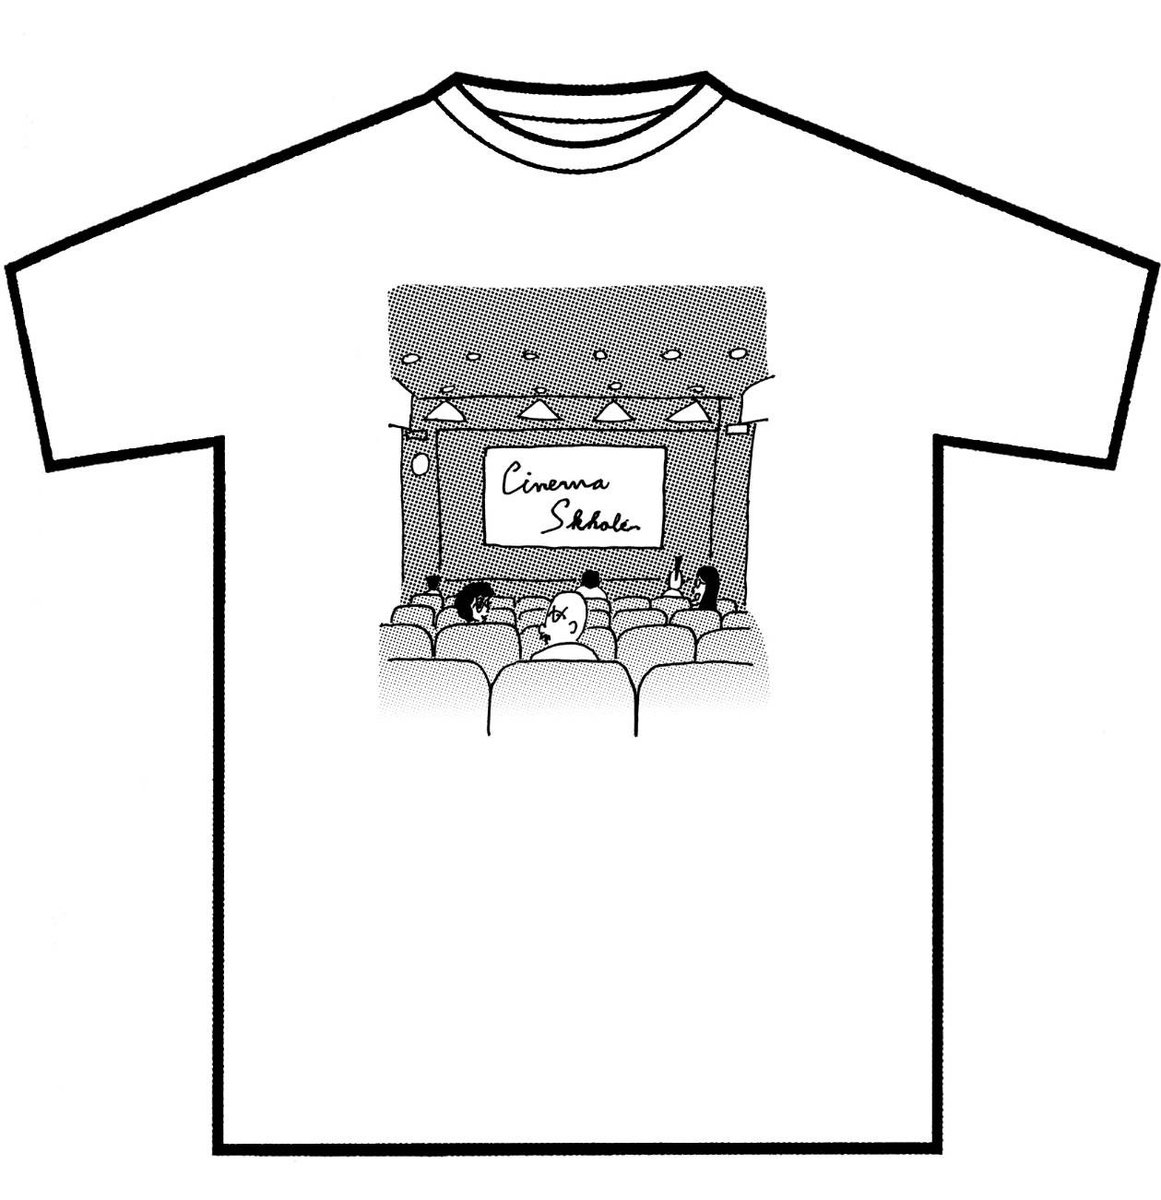 『音楽』×シネマスコーレTシャツ、完売していた第1弾＆第2弾の黒を再入荷しました！発売からもう5年目となります。このTシャツのおかげで生きて来られました。改めて、岩井澤健治監督、大橋裕之さん、そしてご購入いただいた皆さまに心から感謝を！ cafeskhole.stores.jp